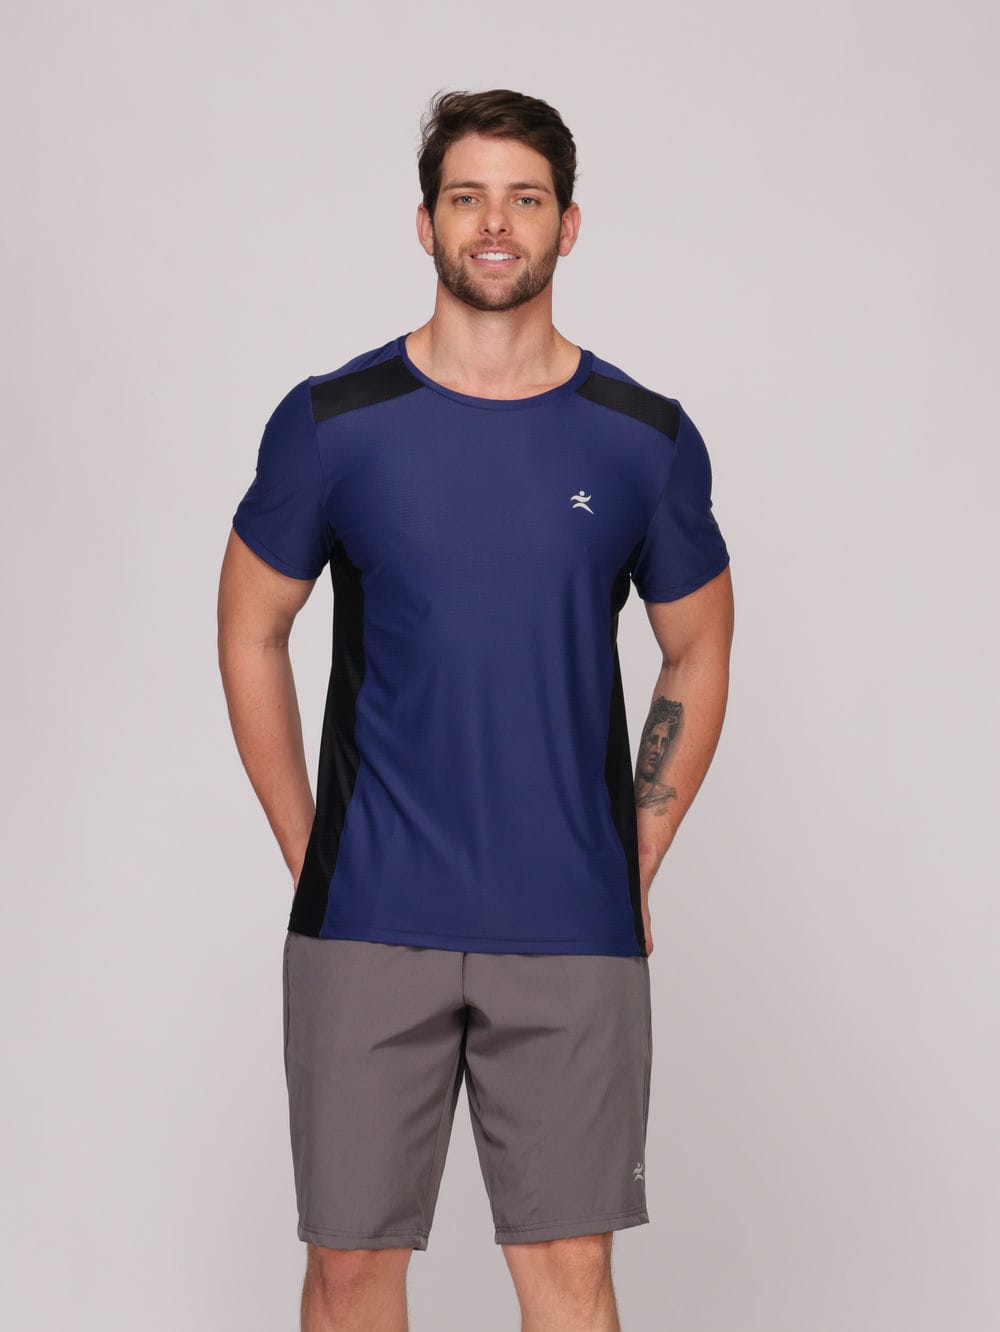 Camiseta Masculina com Recorte Tecido Poliamida com Proteção UV Evita Transpiração - Azul Royal